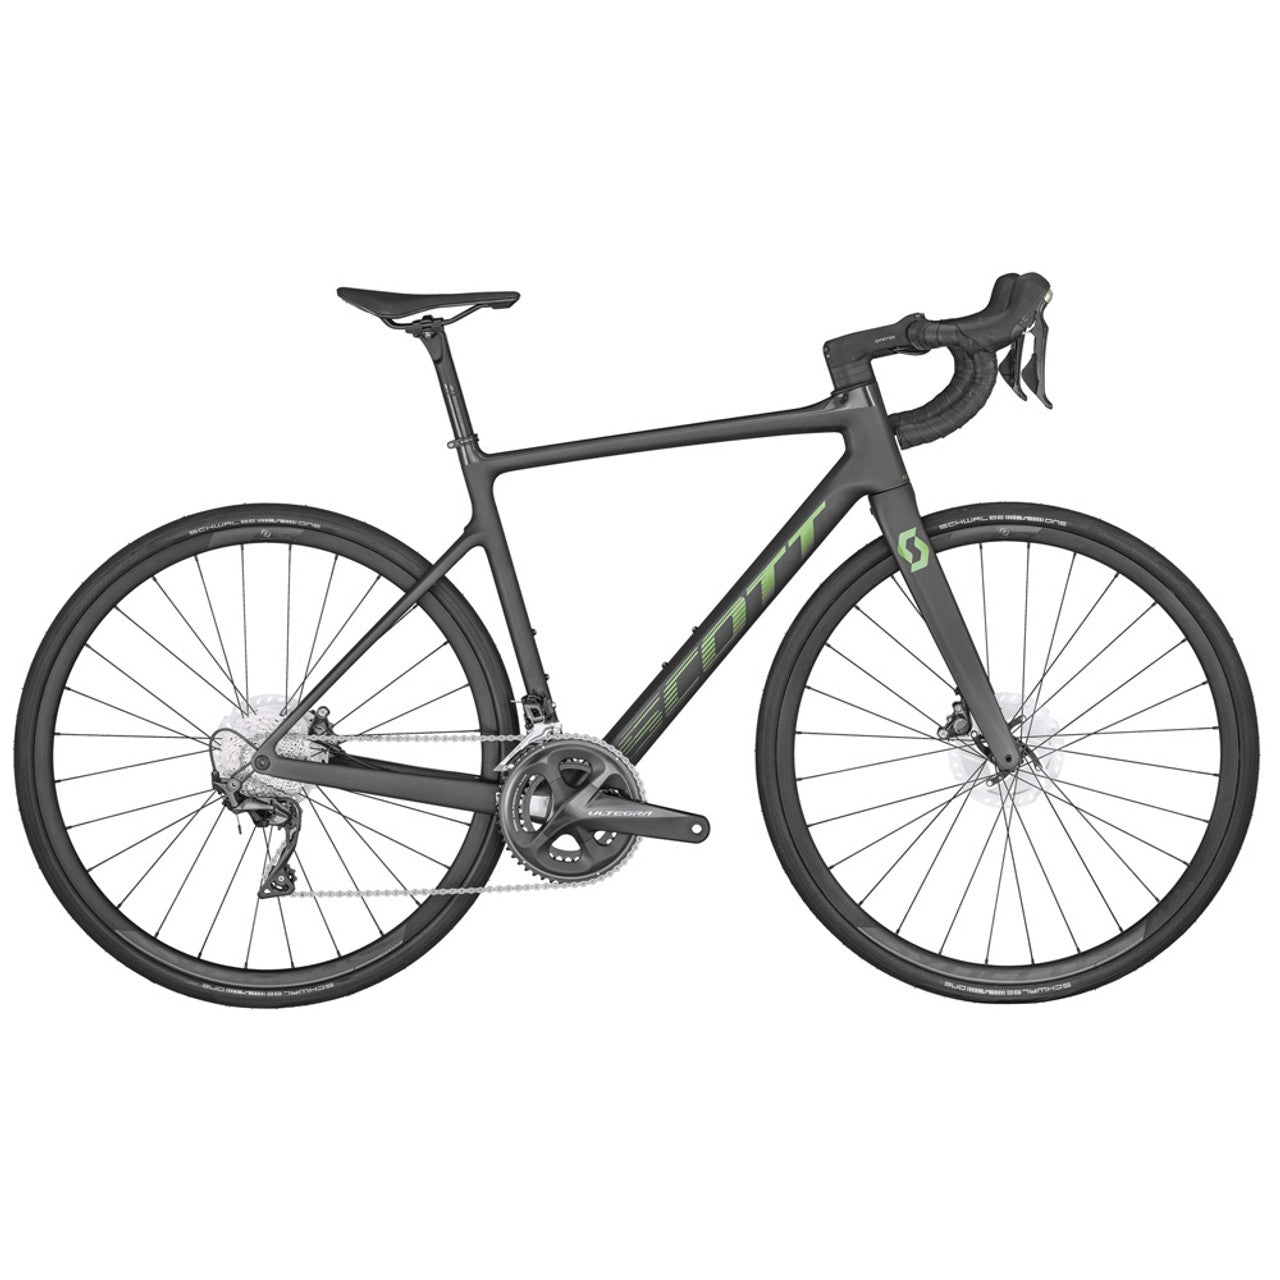 700c Scott bikes addict carbon in black.